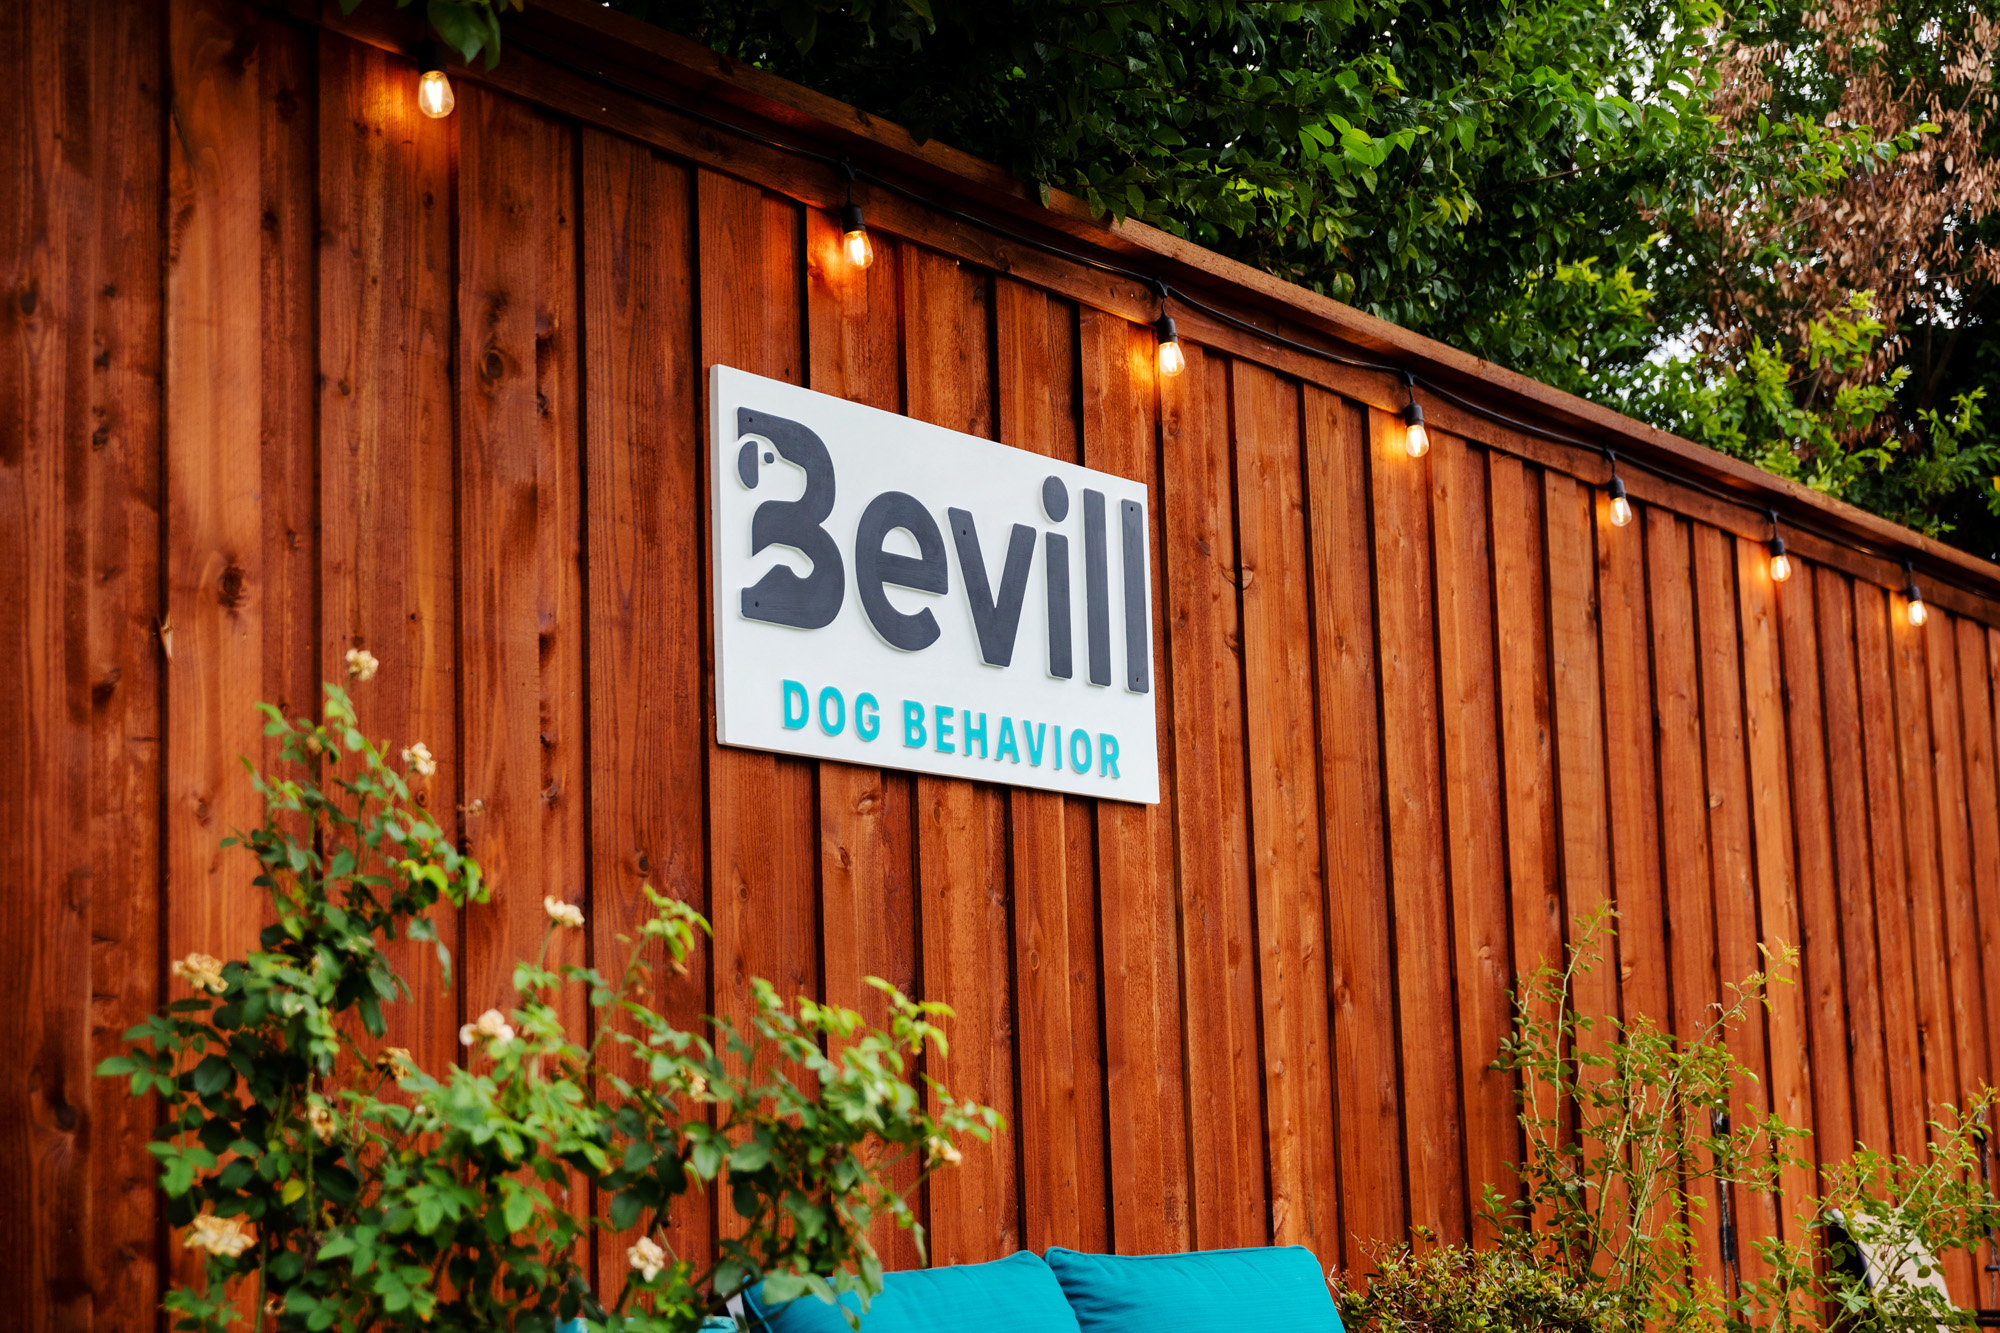 Bevill Dog Behavior